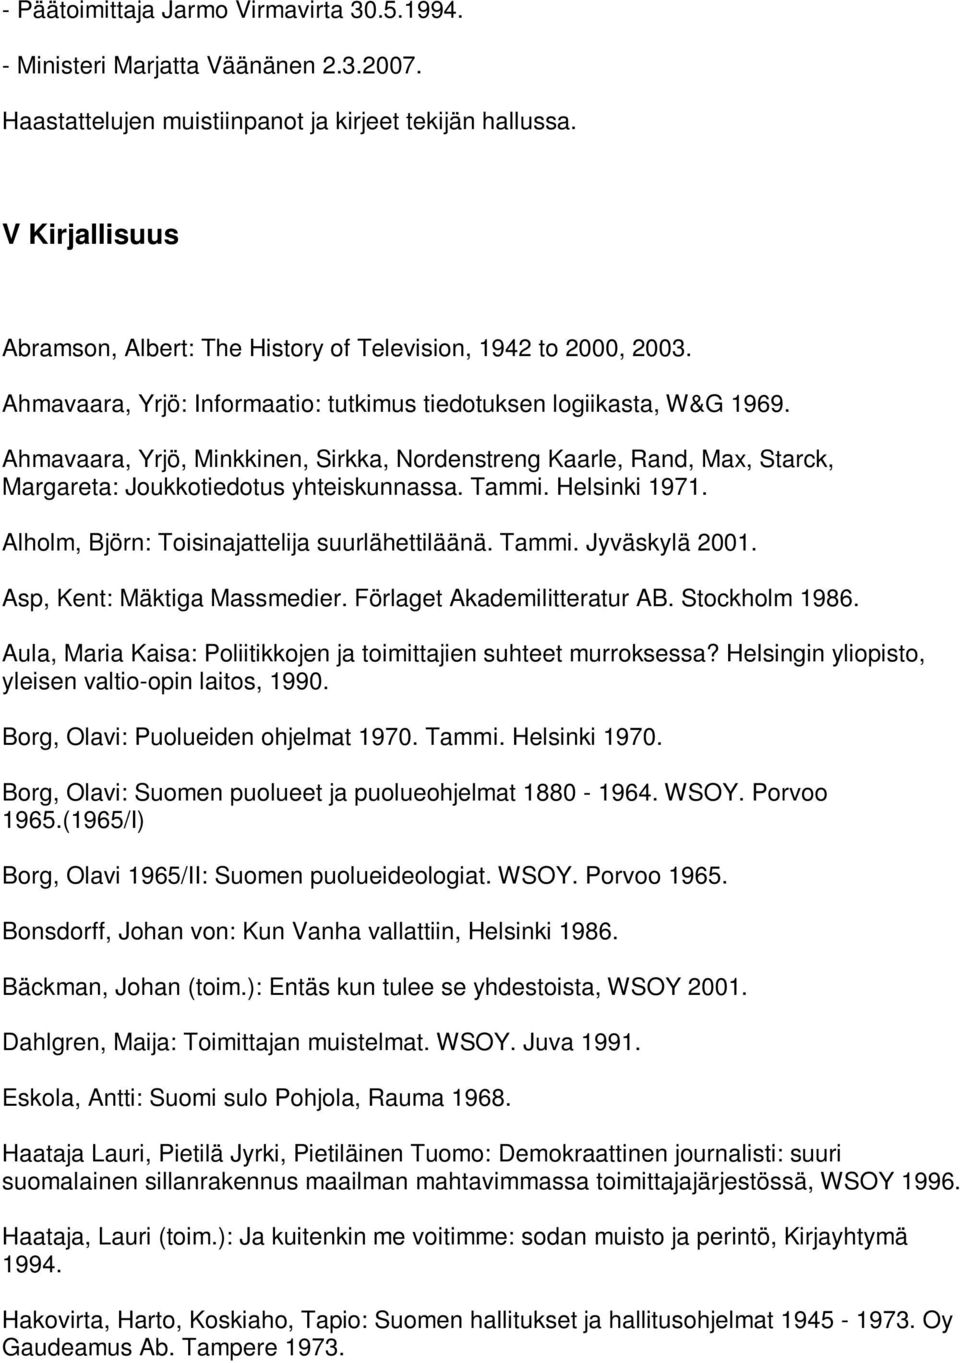 Ahmavaara, Yrjö, Minkkinen, Sirkka, Nordenstreng Kaarle, Rand, Max, Starck, Margareta: Joukkotiedotus yhteiskunnassa. Tammi. Helsinki 1971. Alholm, Björn: Toisinajattelija suurlähettiläänä. Tammi. Jyväskylä 2001.